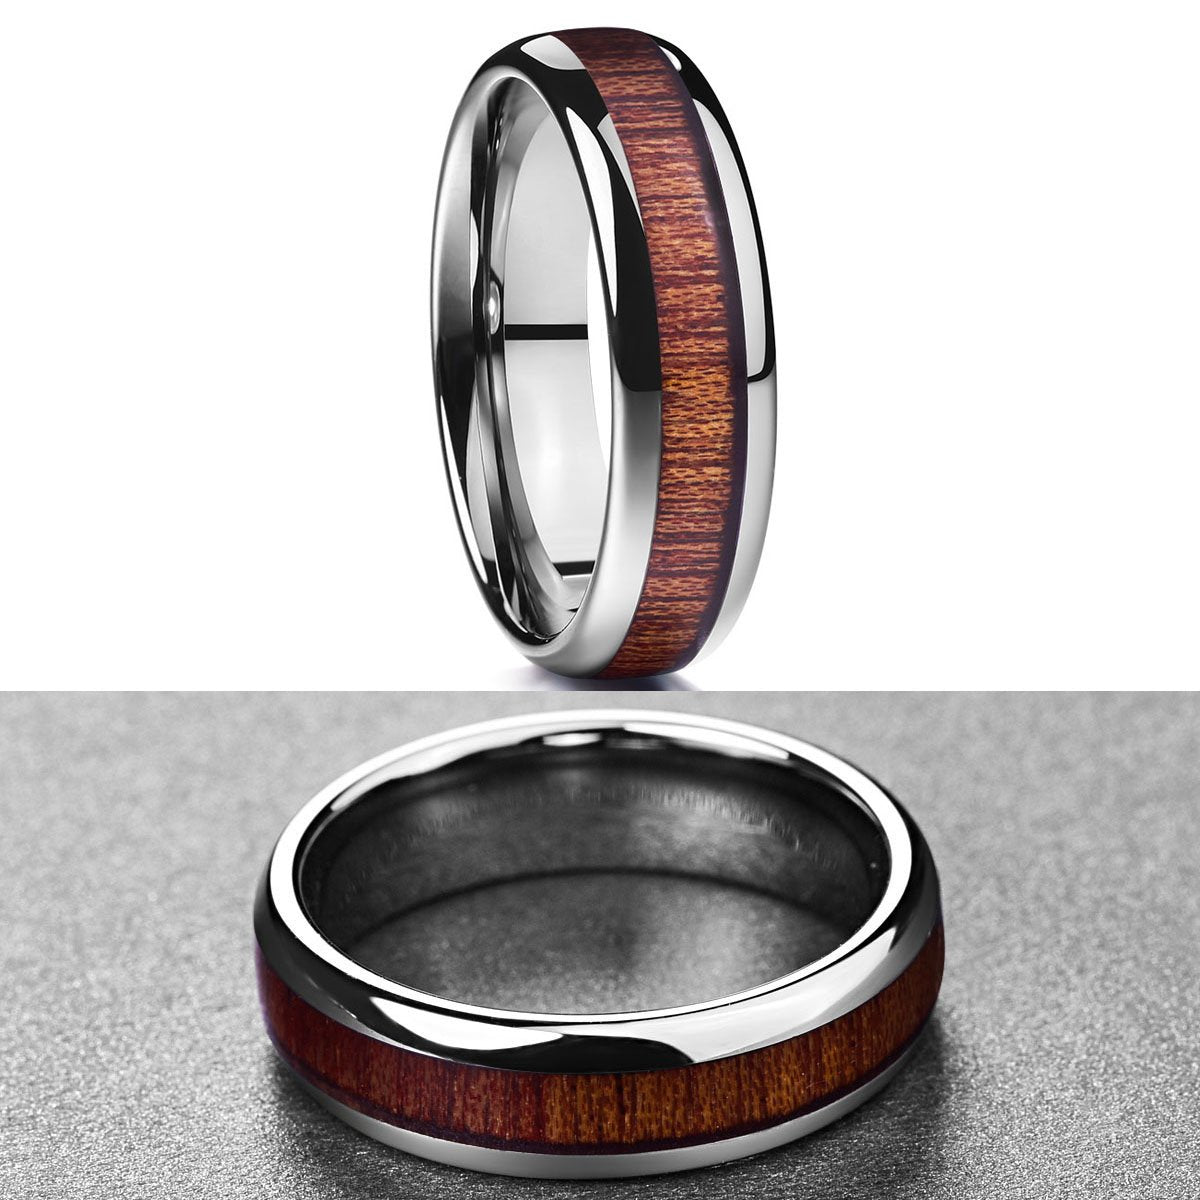 Wooden Tungsten Ring